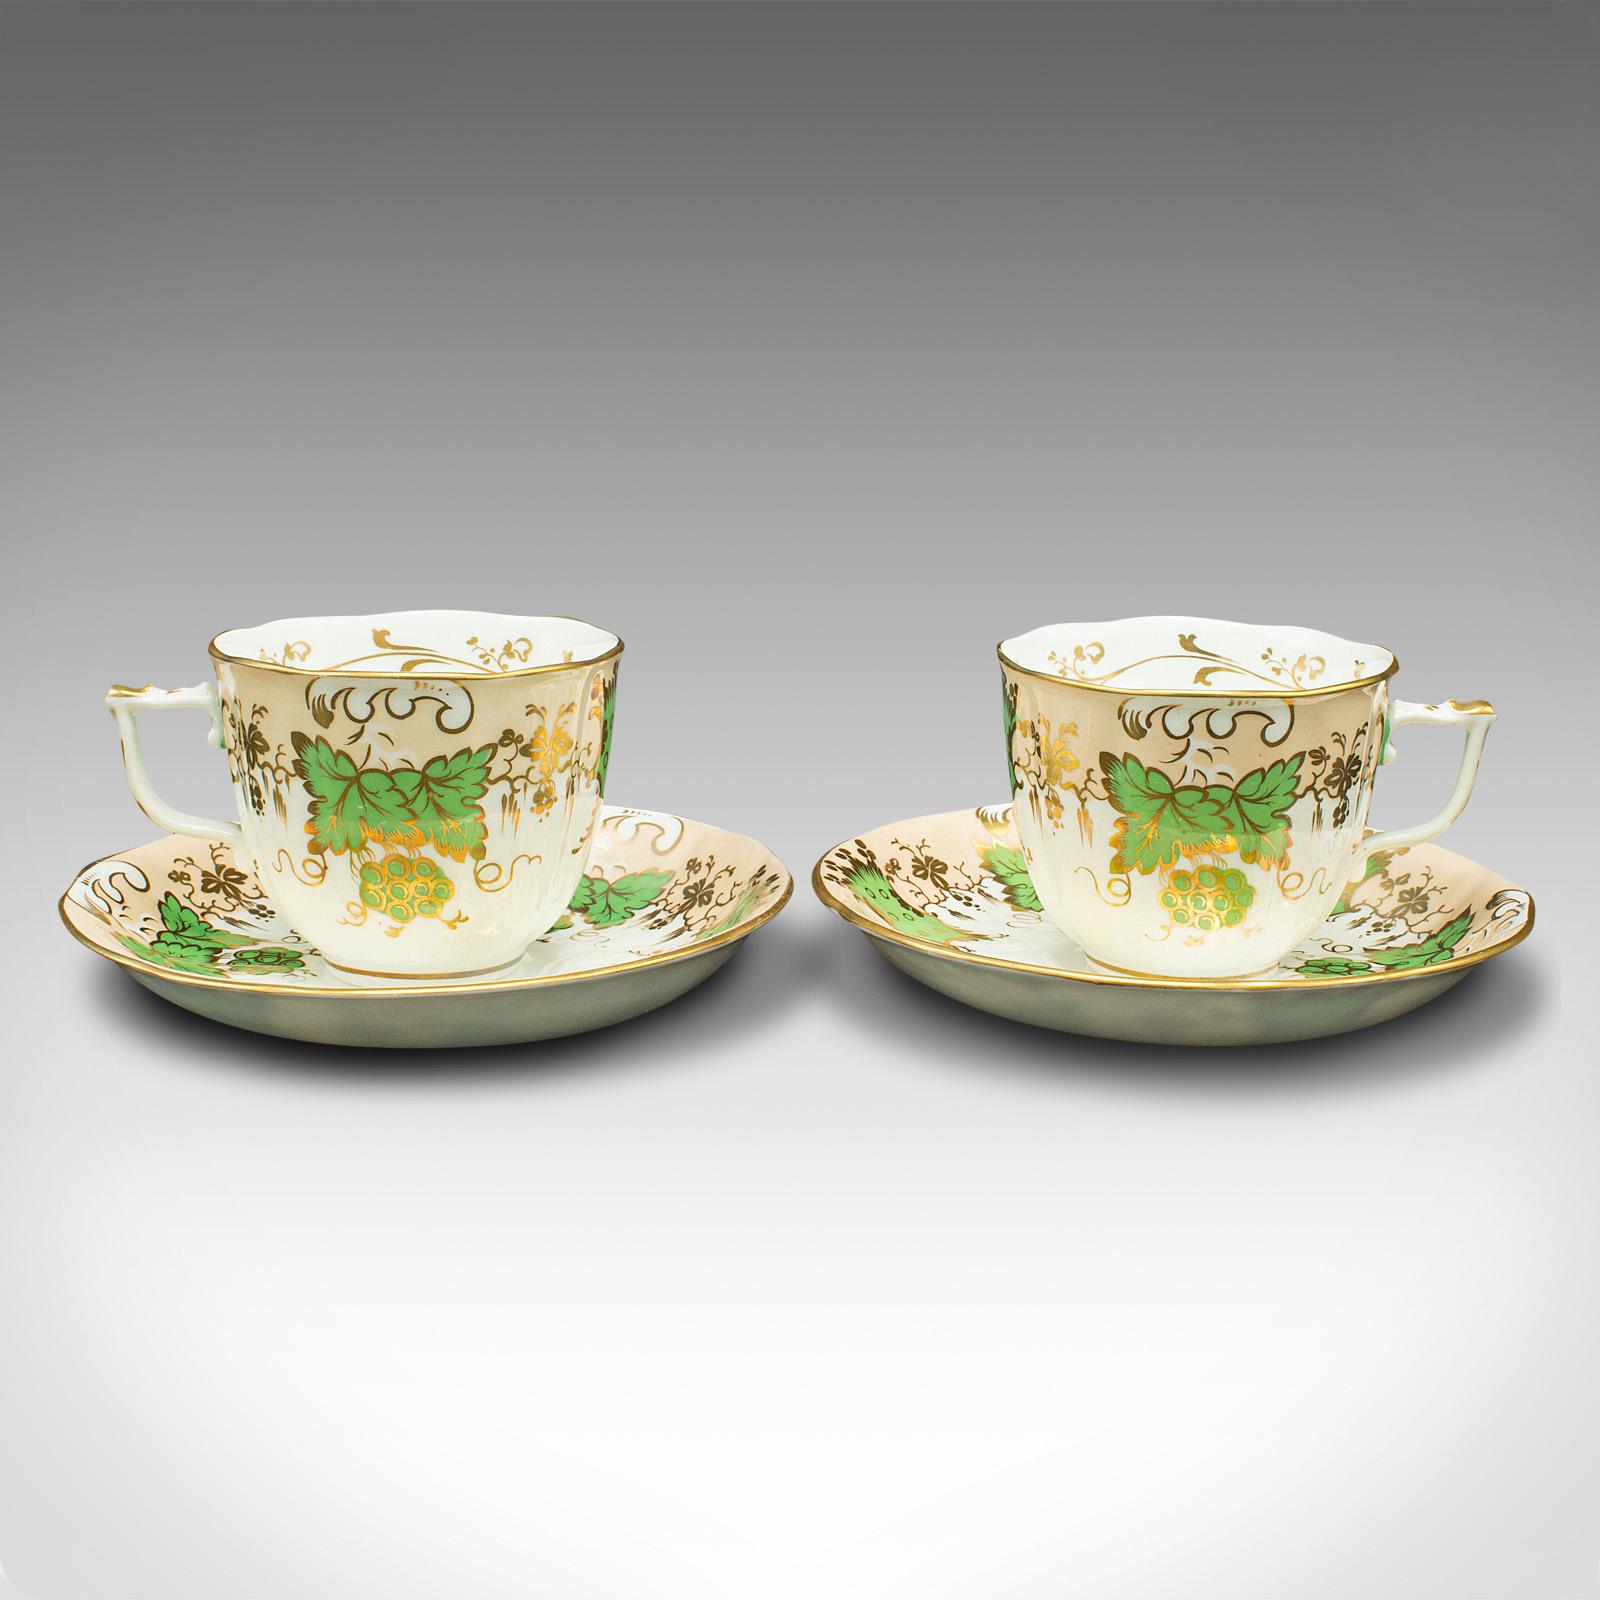 Il s'agit d'un ensemble de 4 tasses à thé anciennes. Tasse et soucoupe décoratives anglaises en porcelaine osseuse à motif de raisin vert, datant de la période victorienne, vers 1850.

Un plaisir à tenir en main et une belle décoration